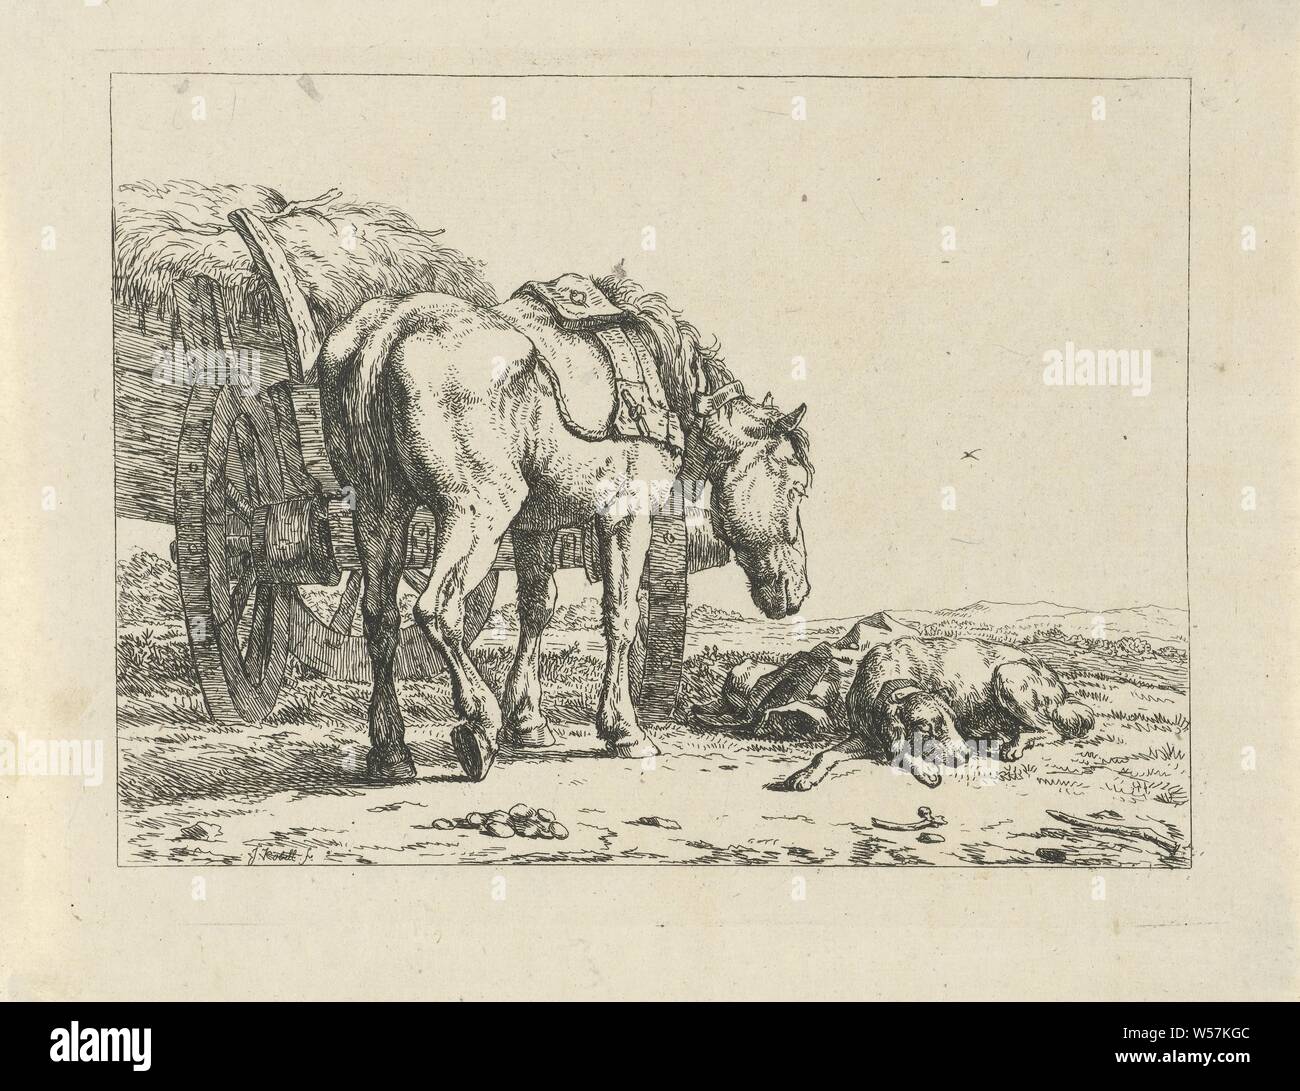 Cheval et chien à une charrette de foin, dans un paysage vallonné est une charrette de foin avec un cheval à côté, vu de derrière. À côté du cheval un chien mignon, chien, cheval, charrette à foin, paysages, Jan (II) Ange (mentionné sur l'objet), 1788 - 1814, le papier, gravure, h 126 mm × W 168 mm Banque D'Images